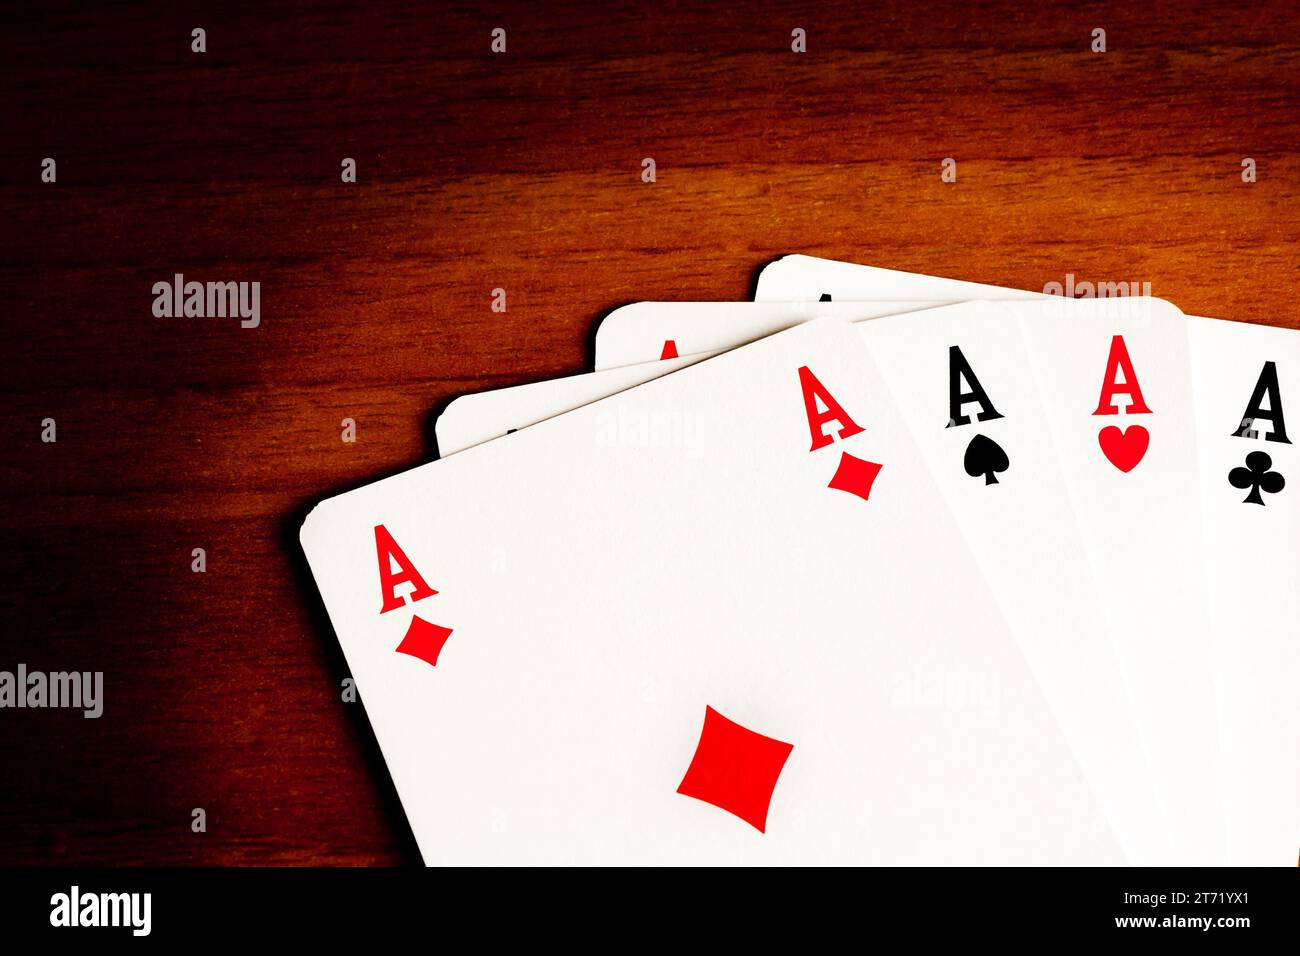 dettaglio degli assi del poker; dettaglio degli assi del poker Foto Stock